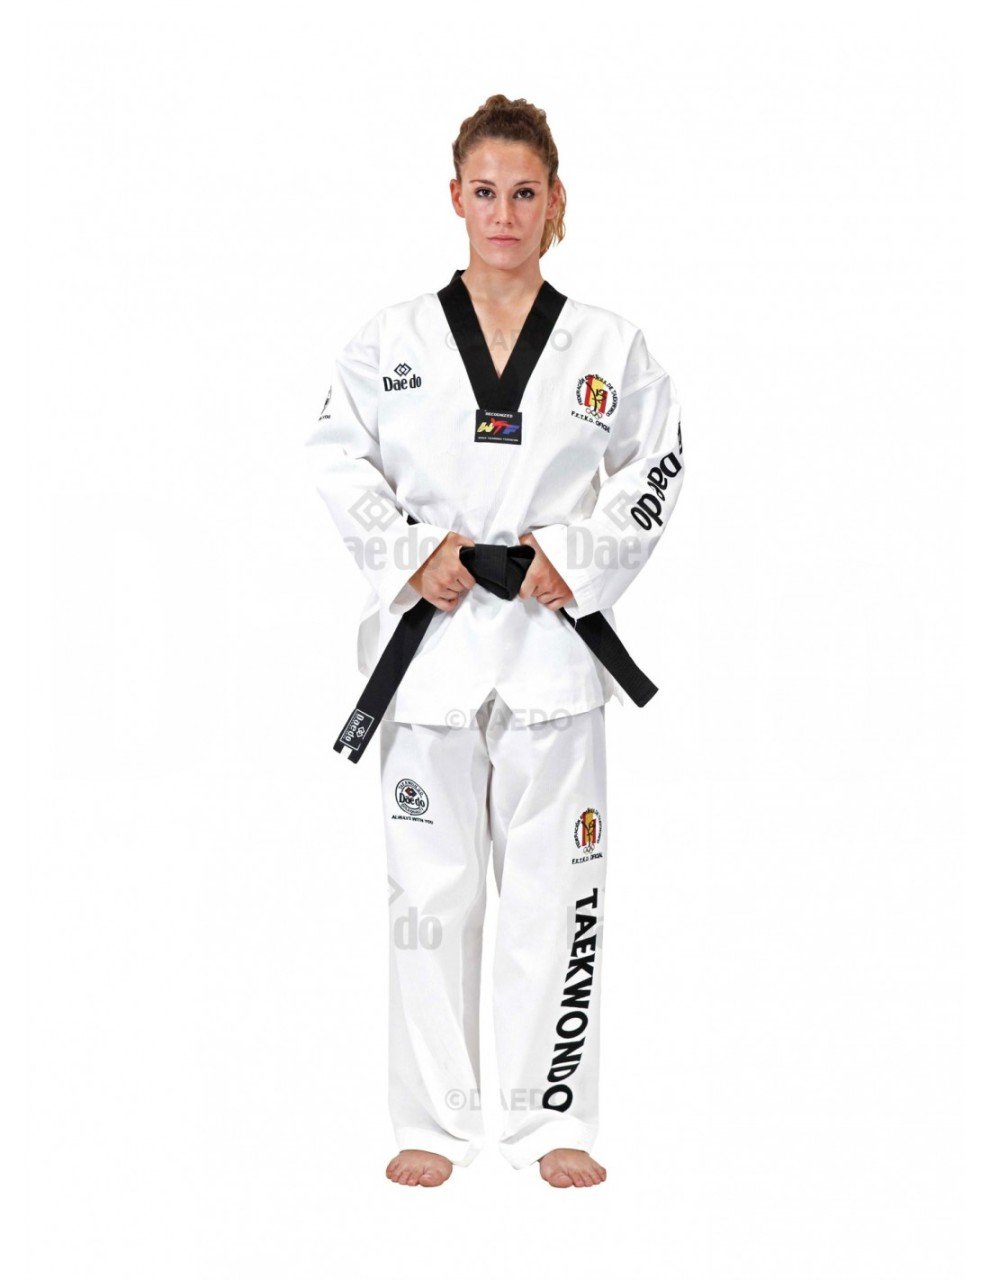 Daedo taekwondo elbise 1047